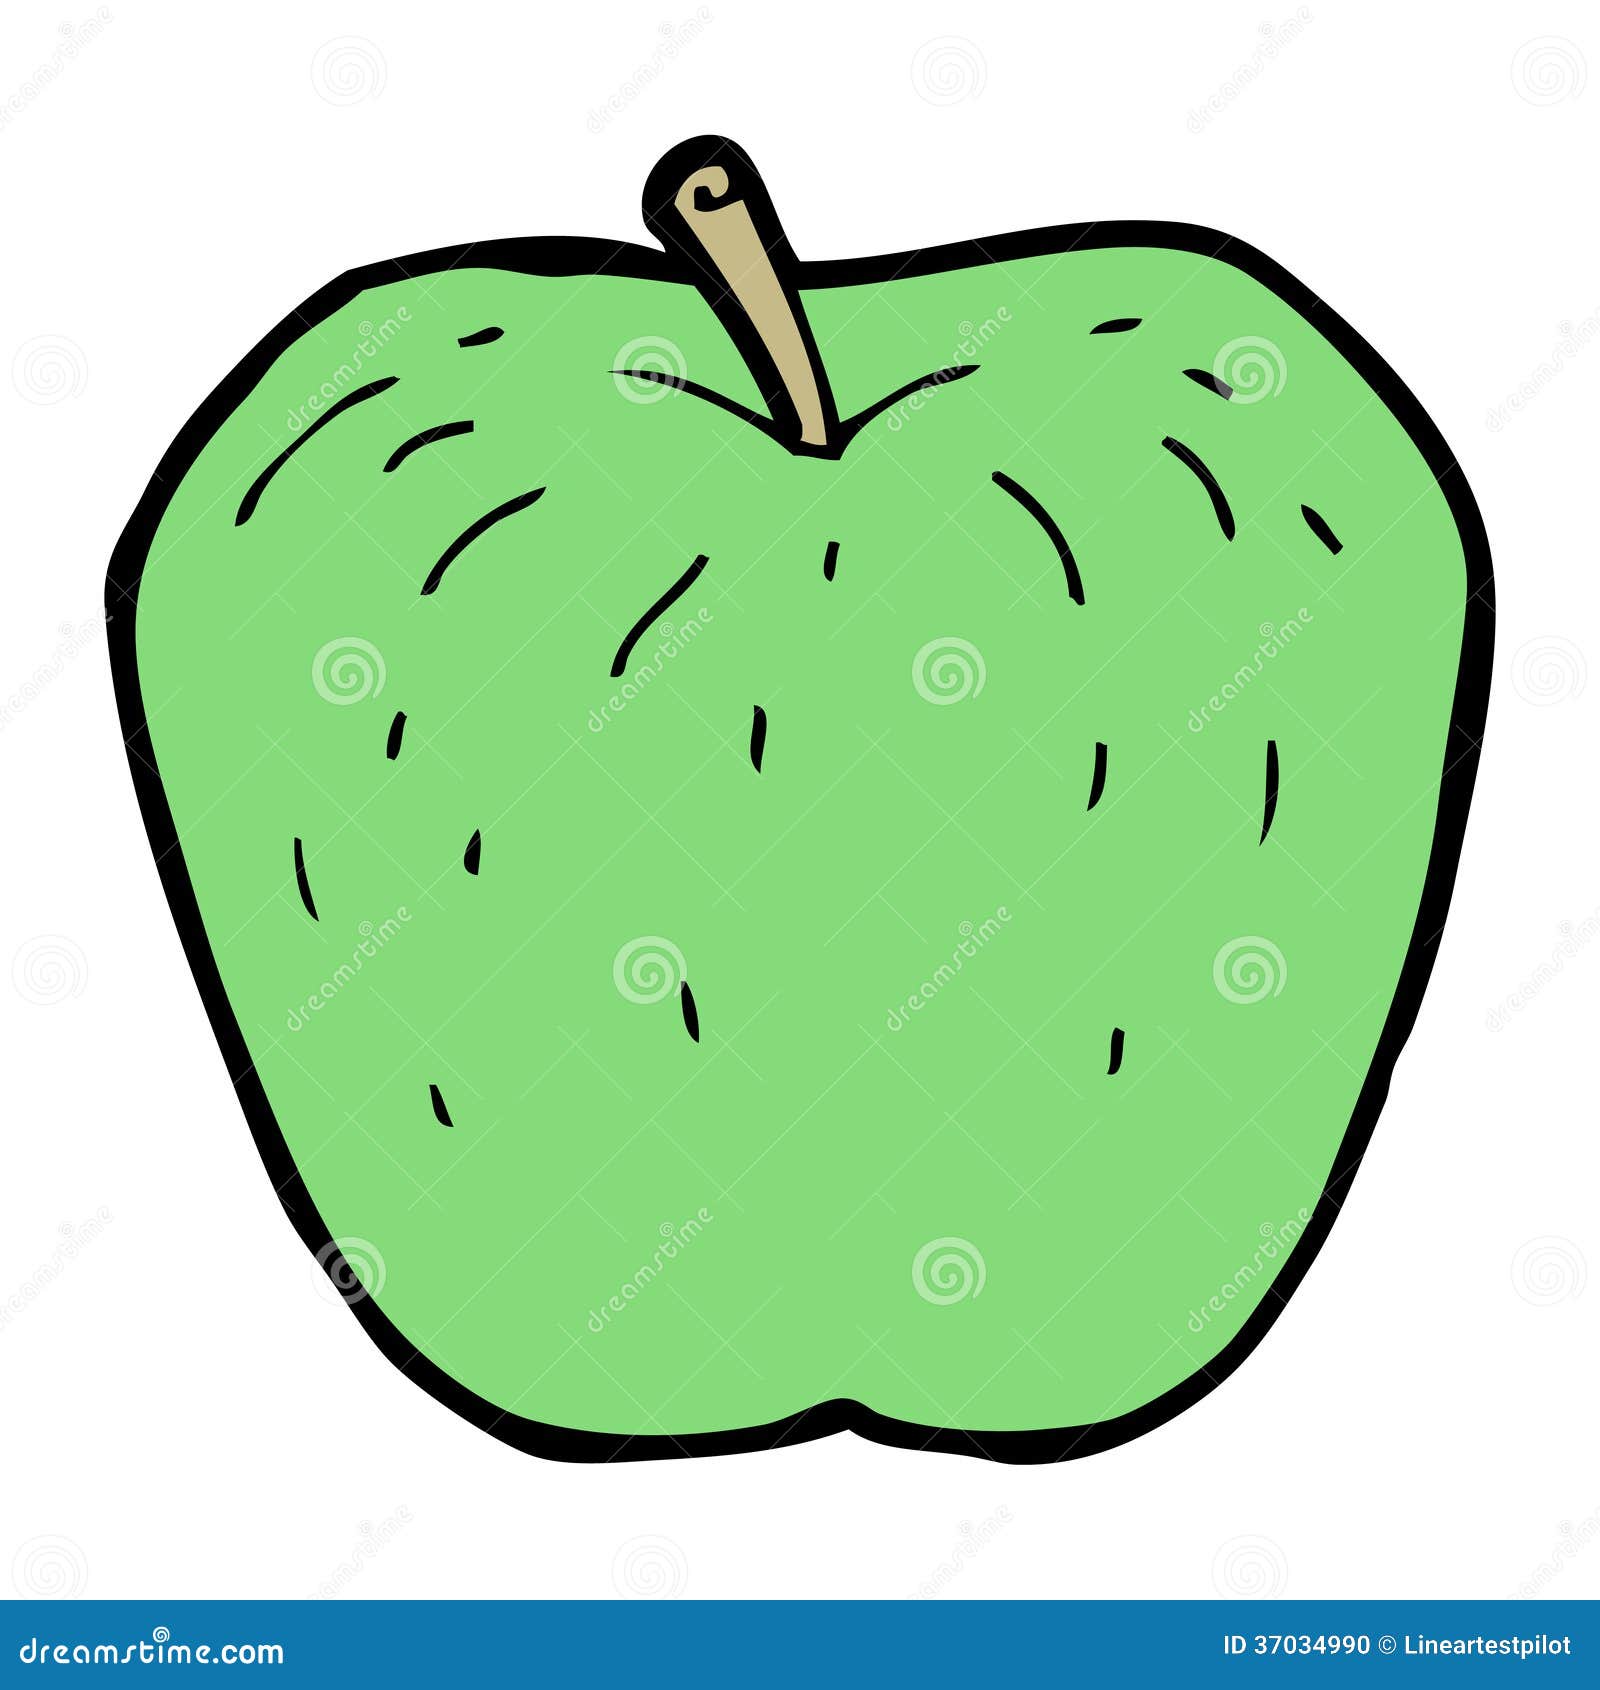 I don t like apple. Яблоко мультяшный стиль. Яблоко комикс. Яблоко в мультяшном стиле с лицом. Карикатура на яблоко рисунок.